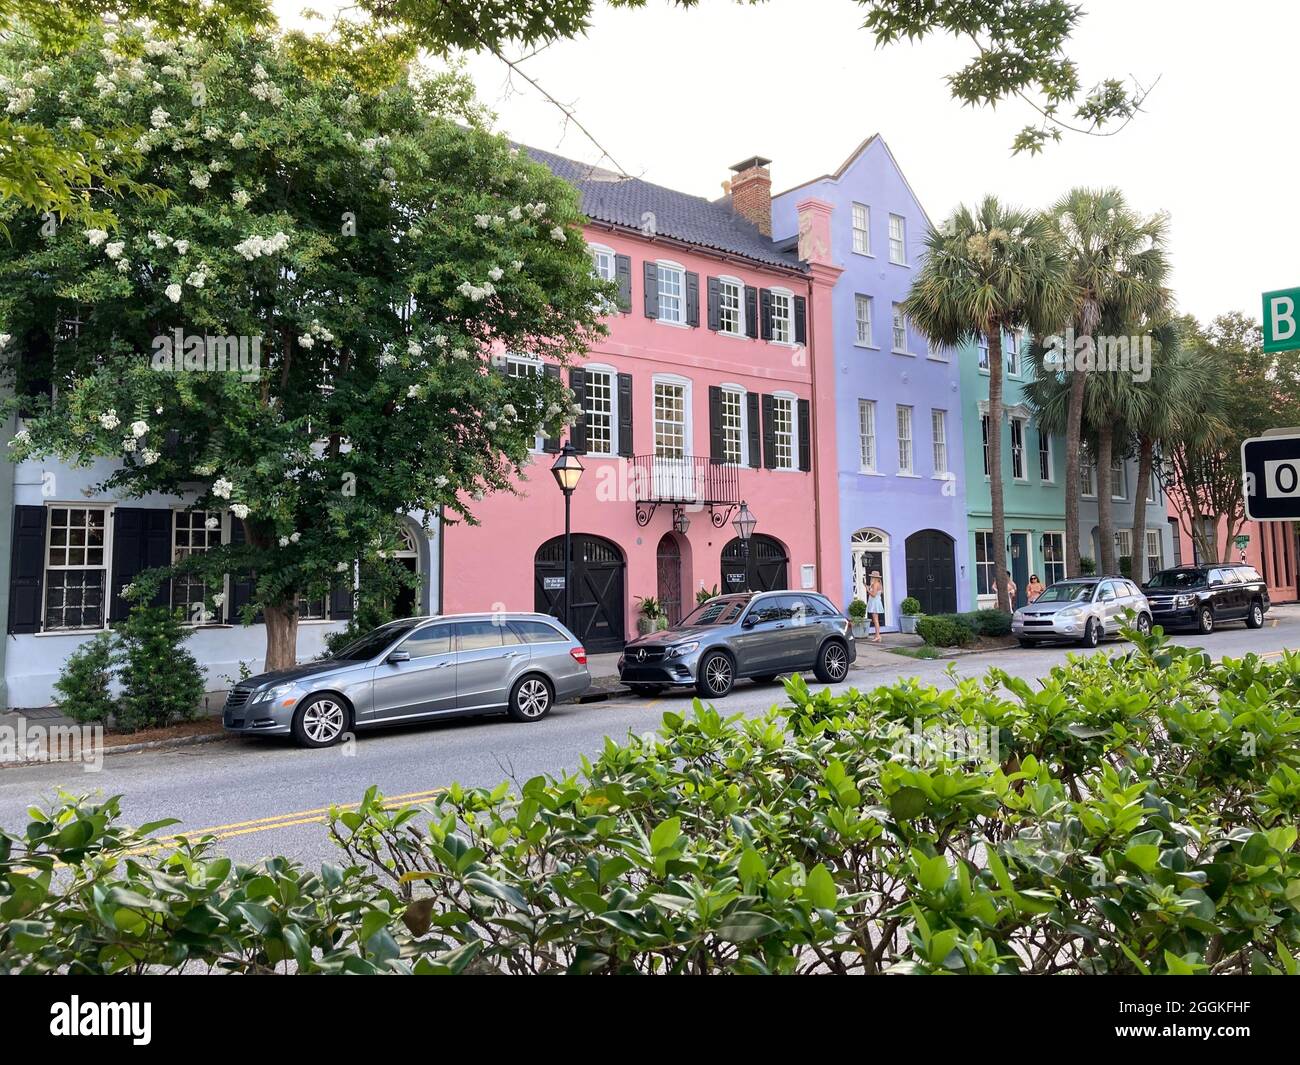 Charleston, South Carolina, Rainbow Row ist eine Serie von 13 bunten historischen Häusern an der East Bay Street. Es stellt die längste Ansammlung georgischer Reihenhäuser in den USA dar. Der Name Rainbow Row wurde nach Pastellfarben geprägt, die während der Restaurierung in den 1930er Jahren gemalt wurden. Das UNESCO-Welterbe-Angebot kam knapp. Stockfoto